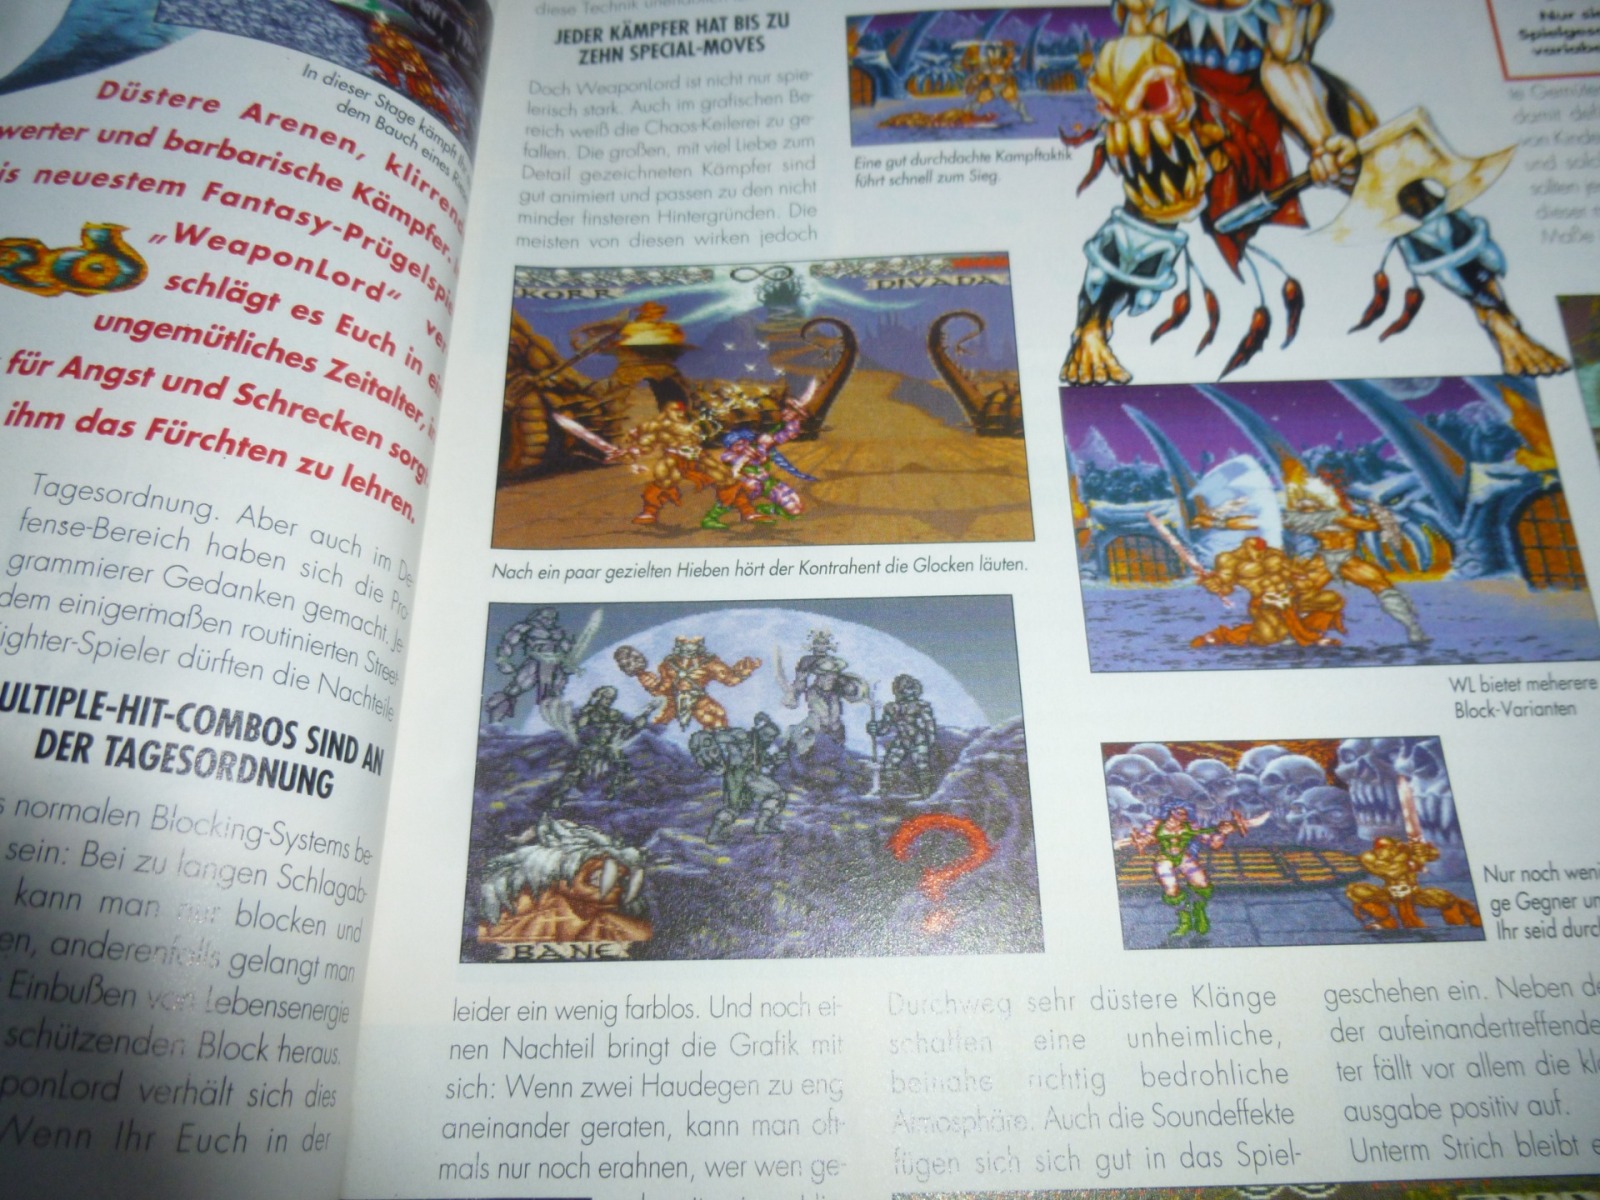 TOTAL Das unabhängige Magazin - 100 Nintendo - Ausgabe 2/96 1996 9